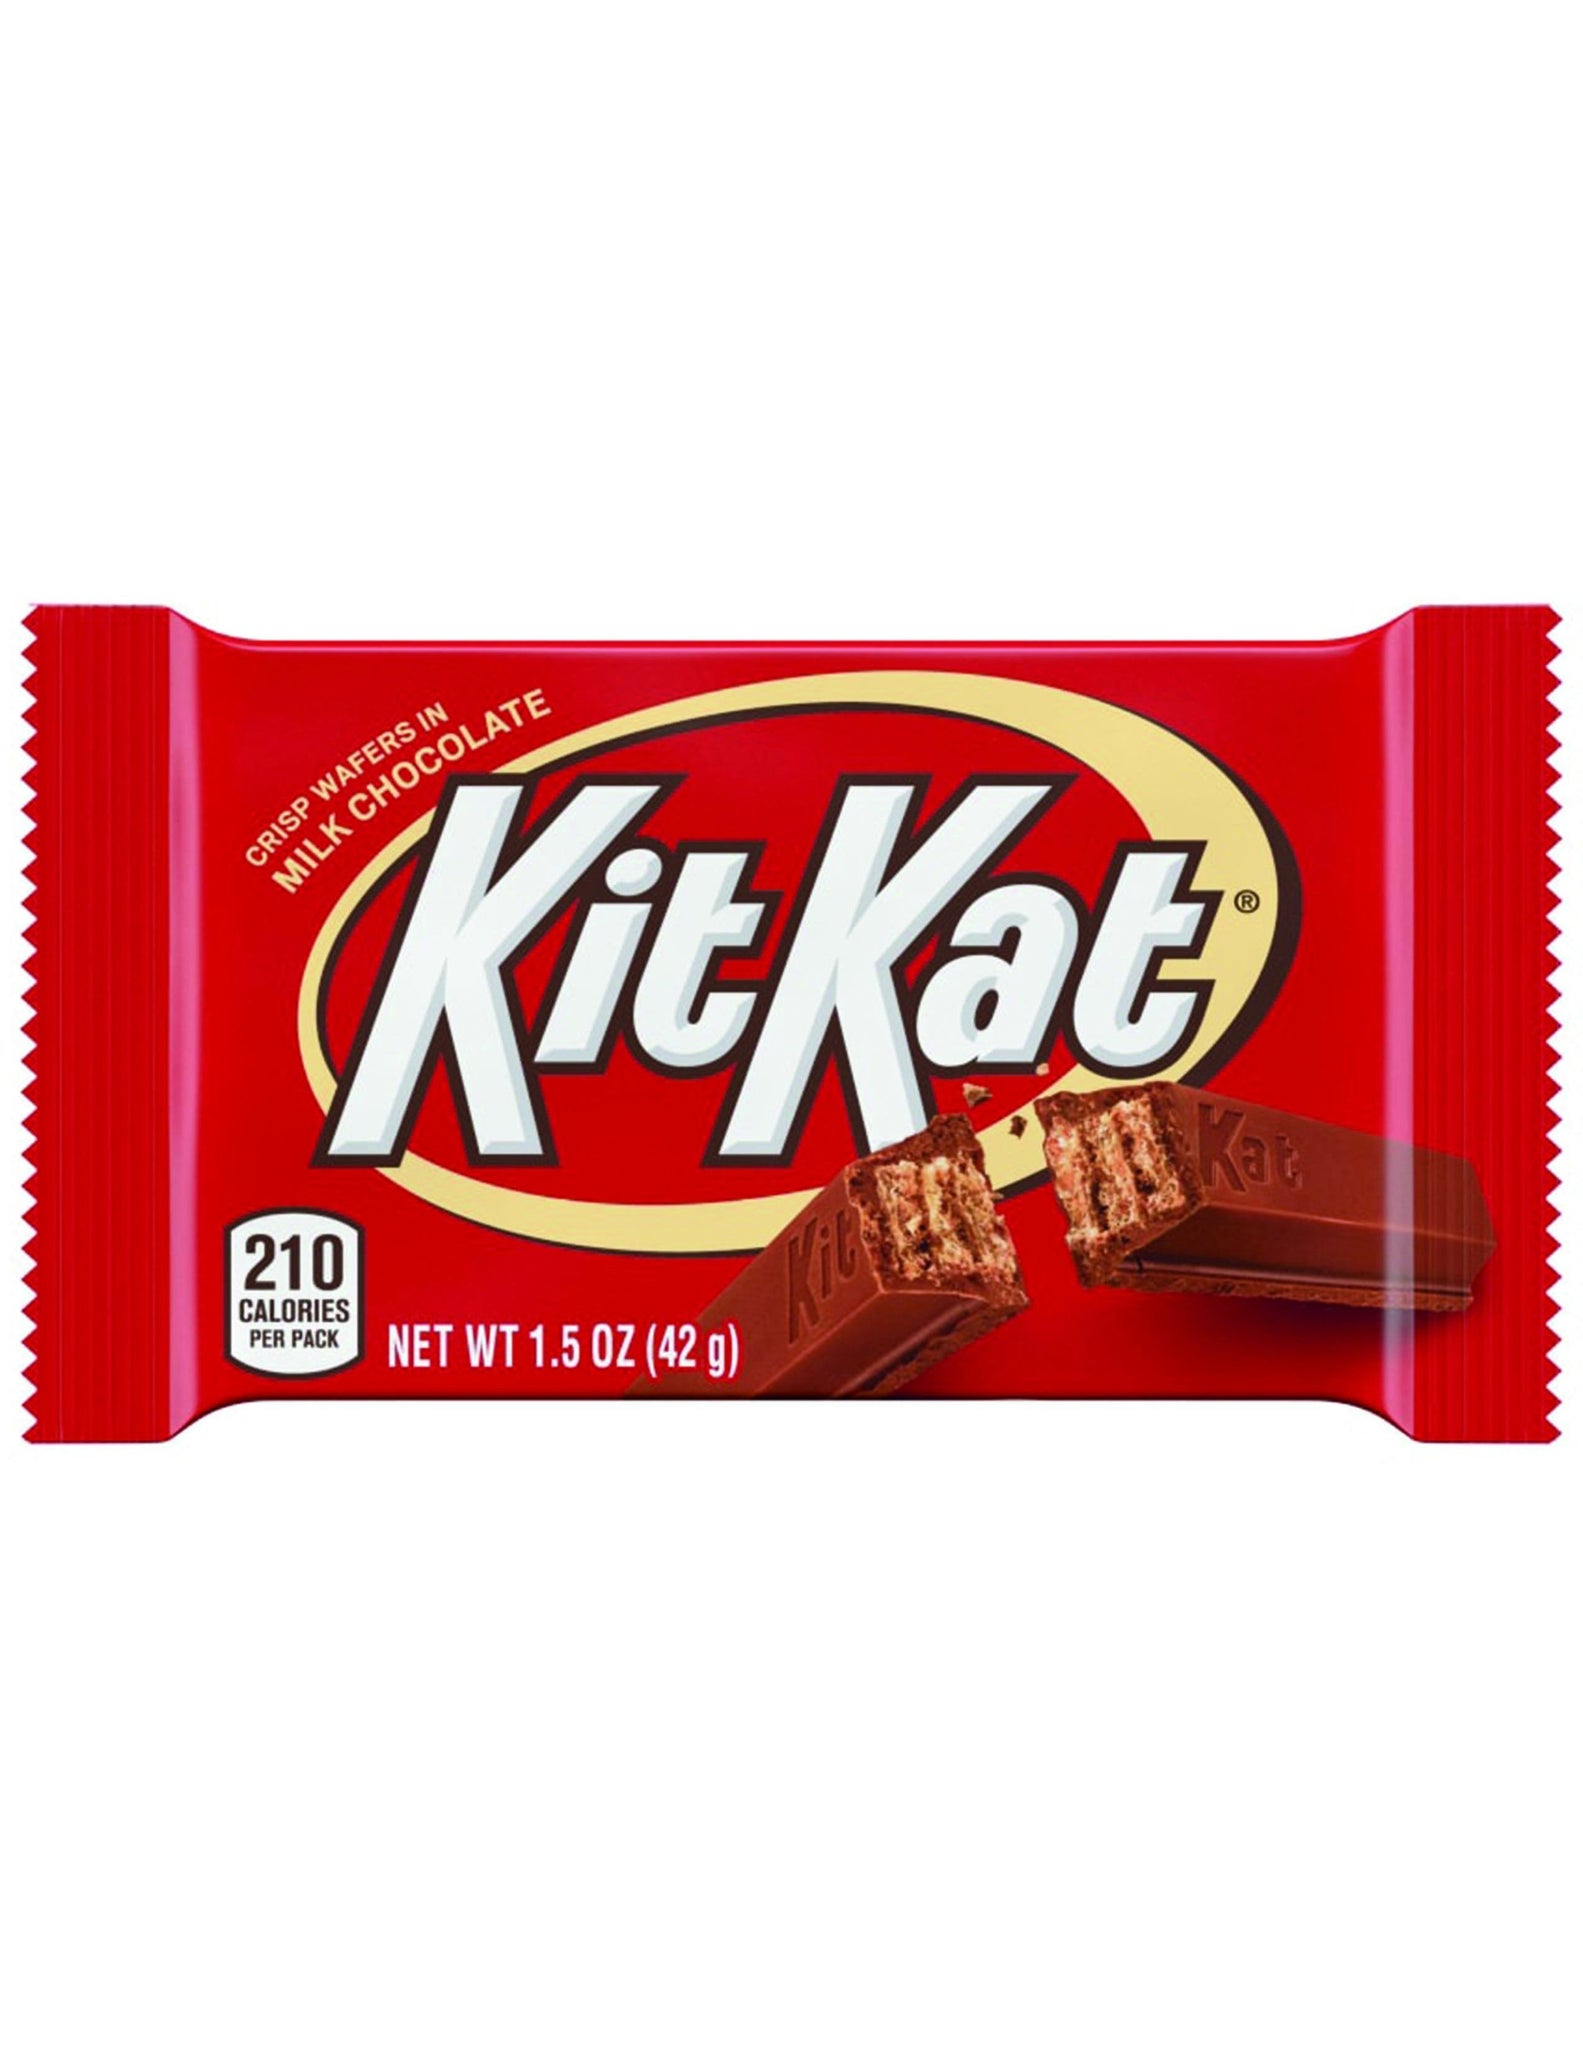 aba>Kit Kat, one